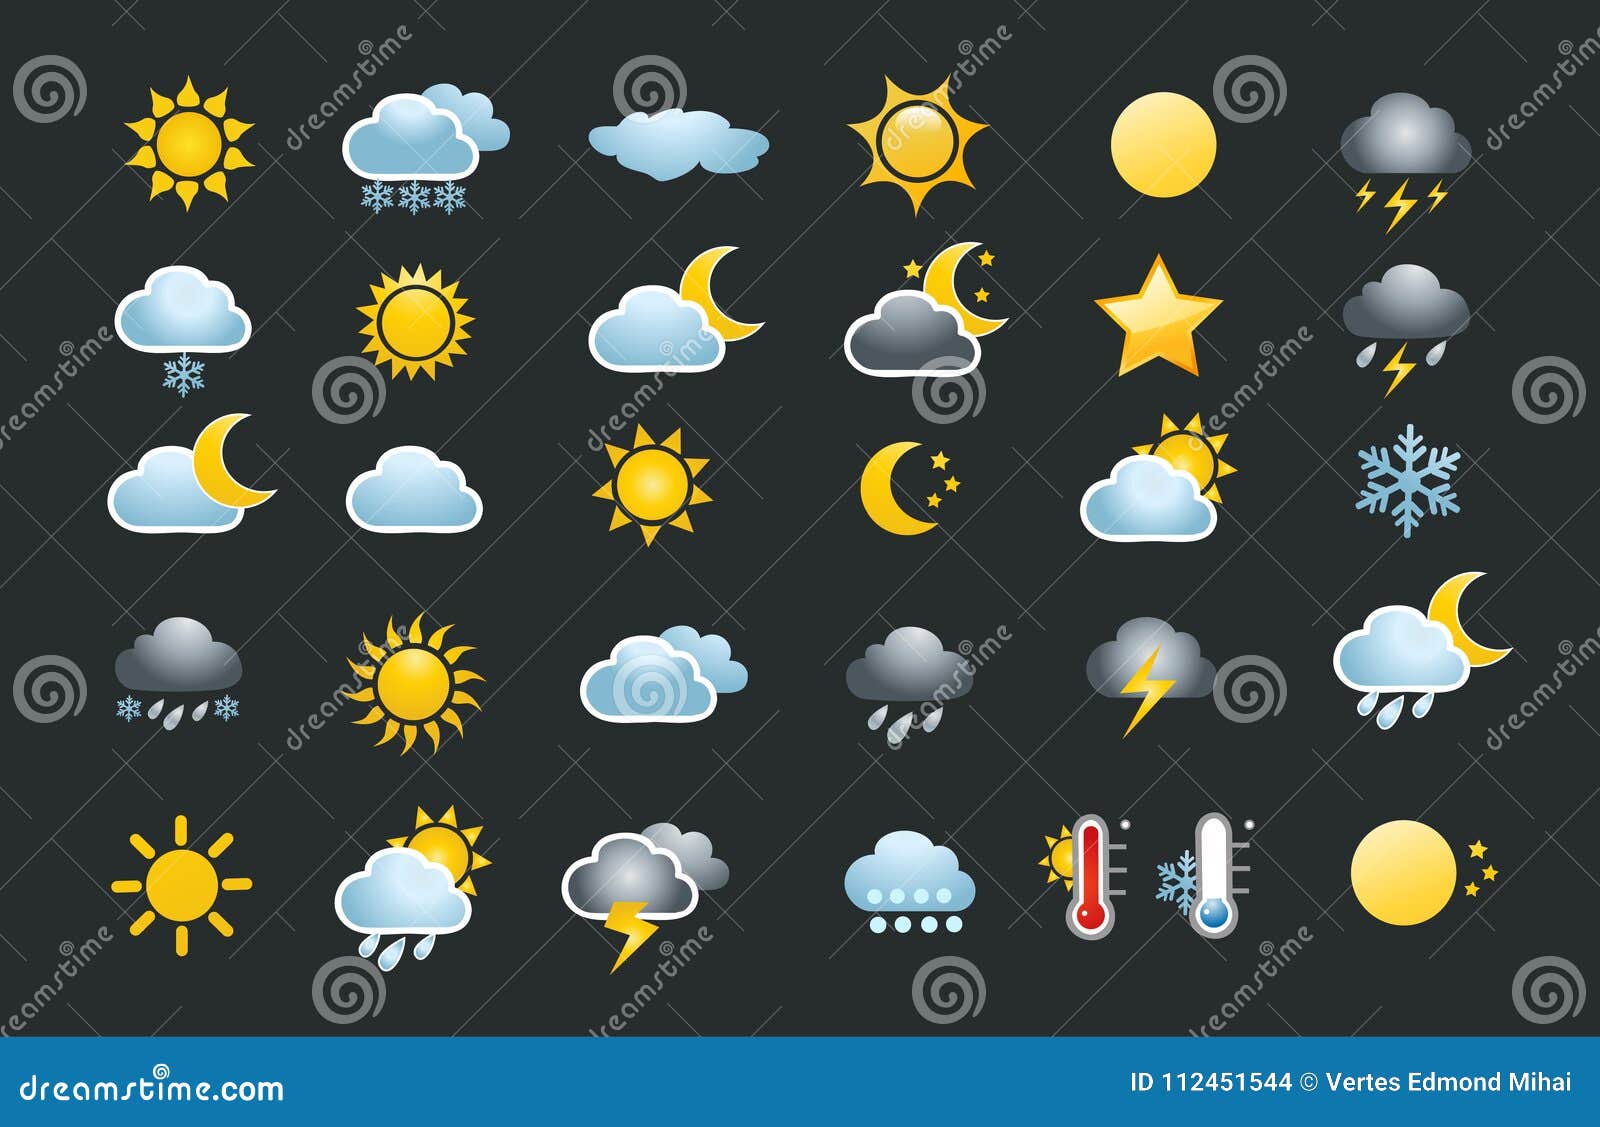 Аудио погода. Значок погоды СТС. Значки погоды и их значение на английском. Значок погода на экран телефона